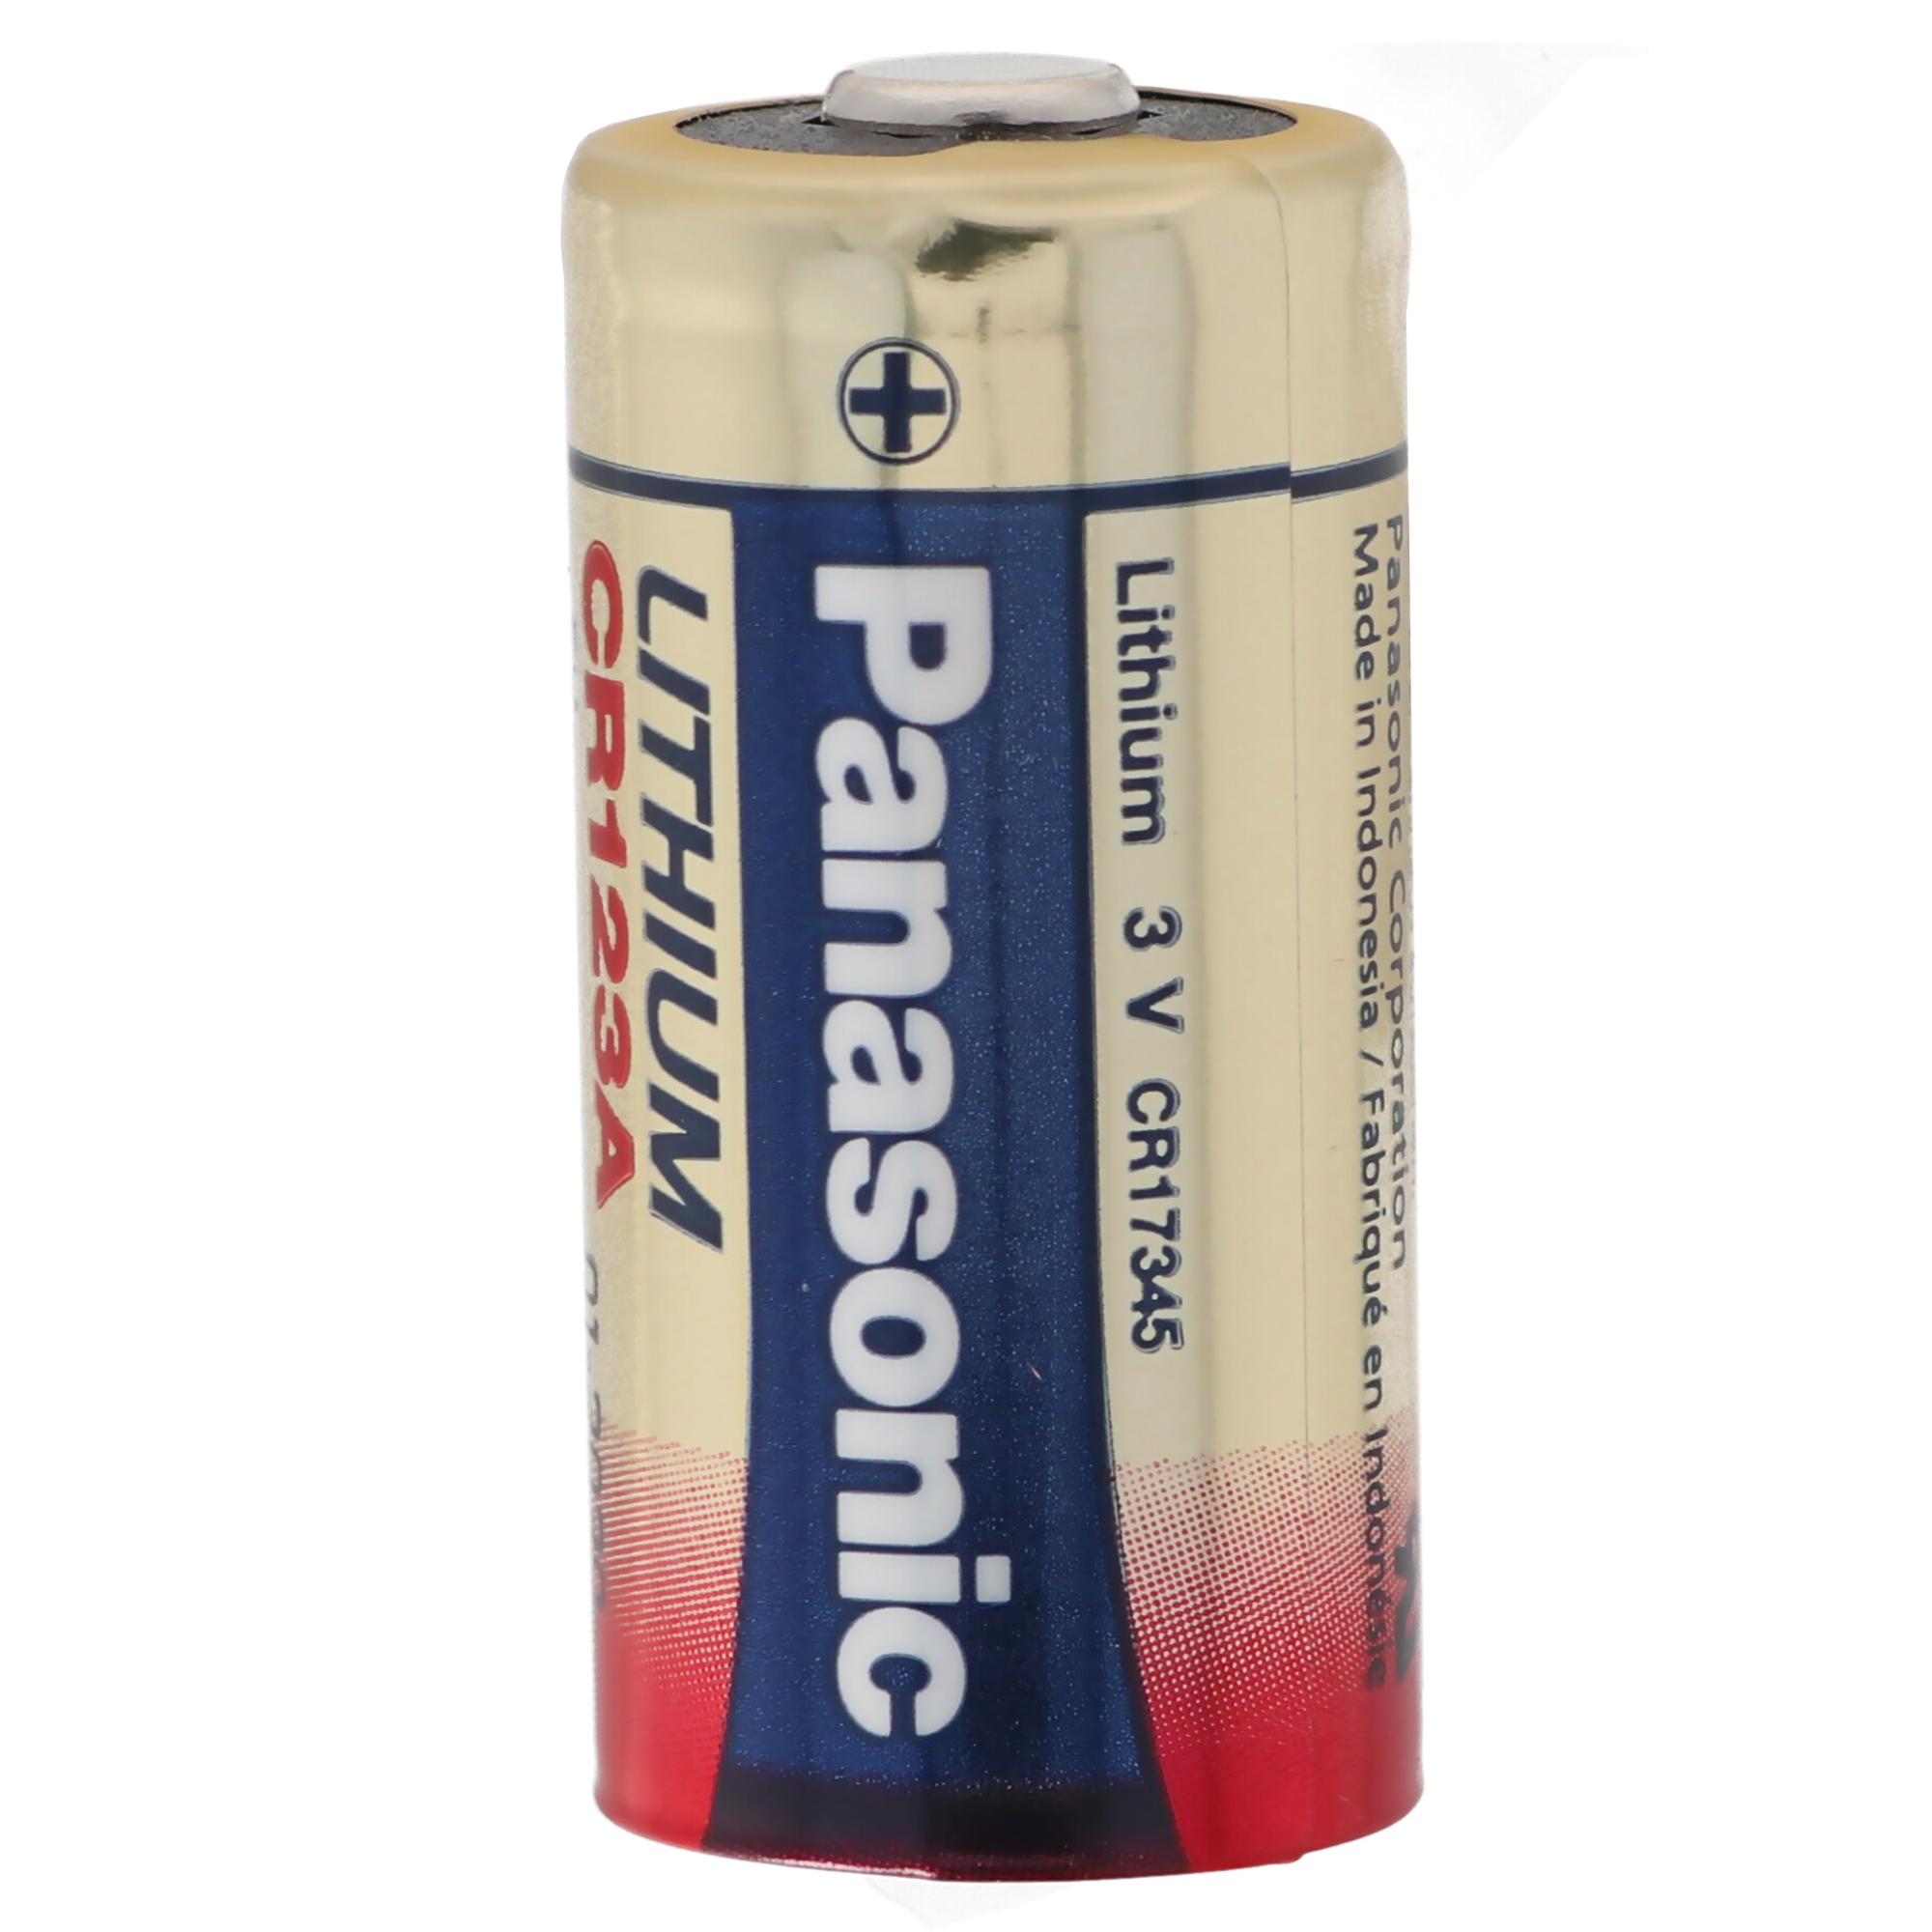 Ersatzbatterie secuENTRY-Zylinder Lithium CR 123A Batterie von Panasonic